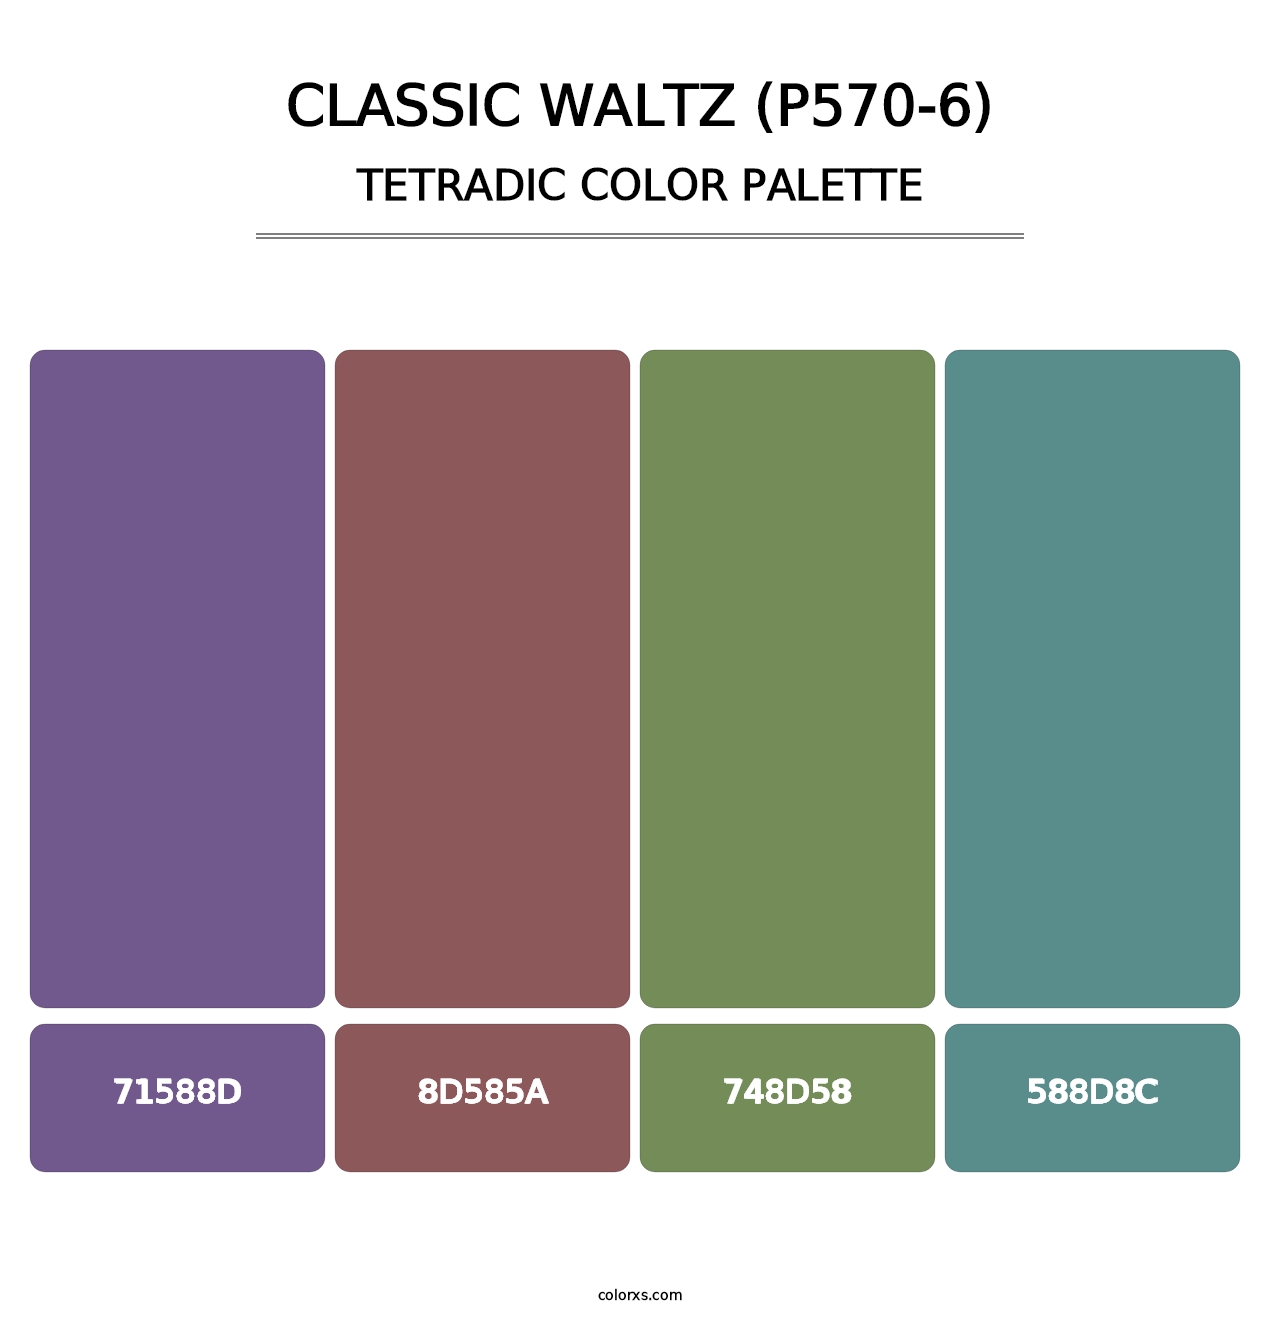 Classic Waltz (P570-6) - Tetradic Color Palette